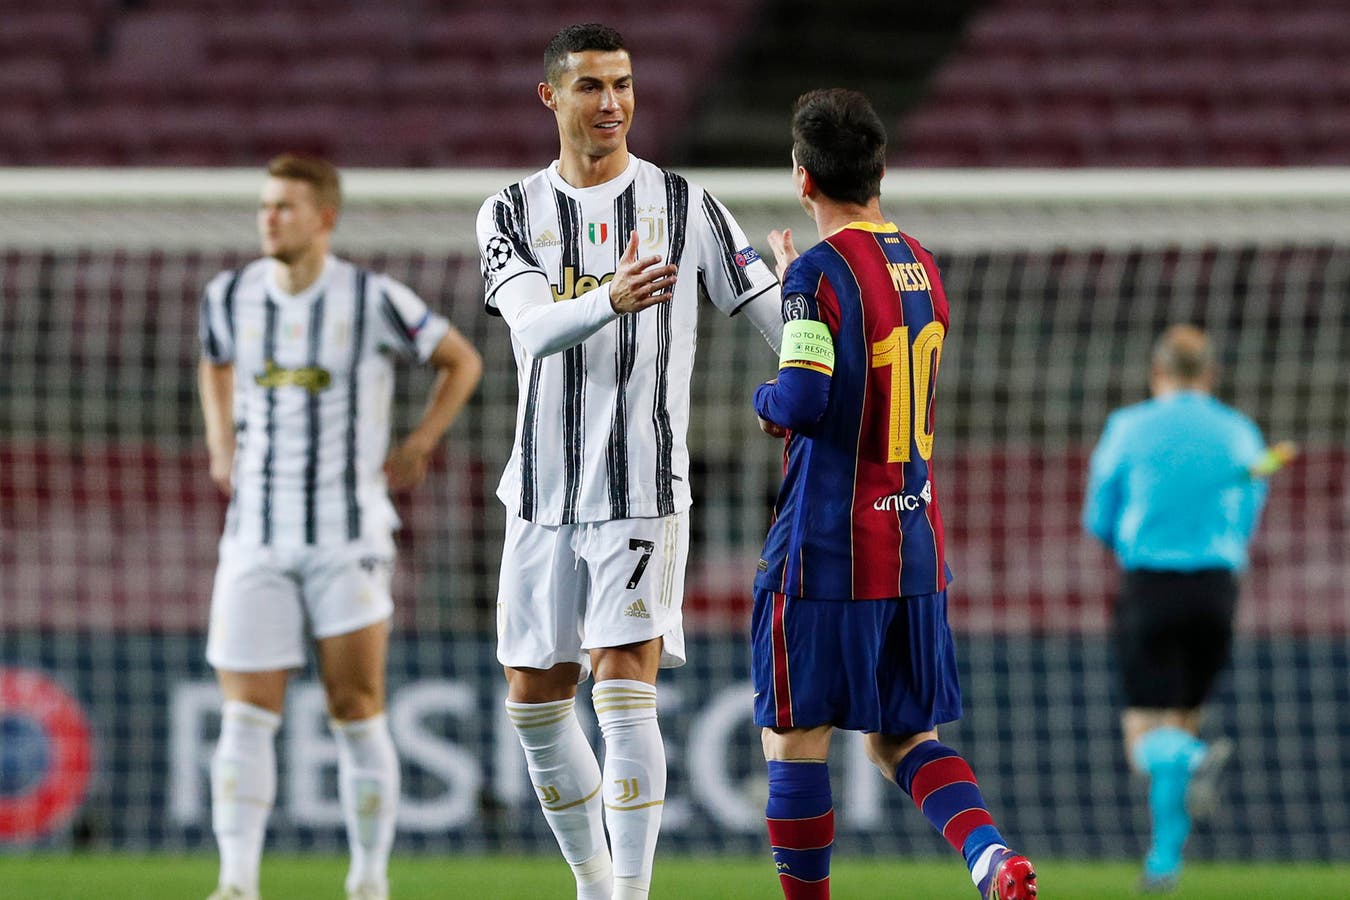 Xem khoảnh khắc Ronaldo và Messi lần đầu gặp lại sau 1000 ngày